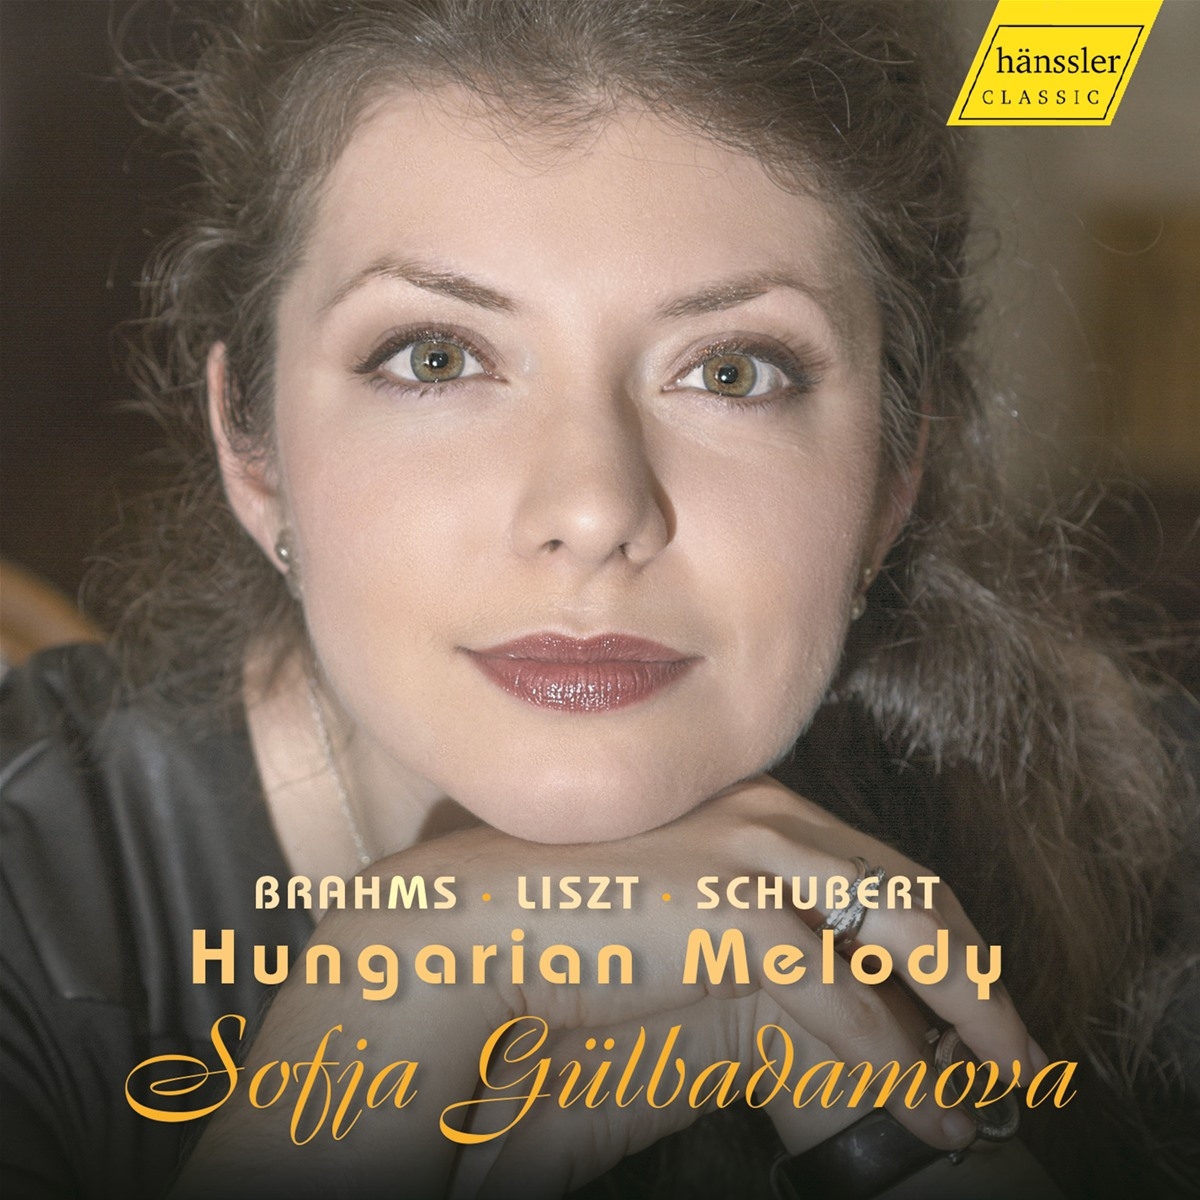 Sofja Gülbadamova plays Brahms